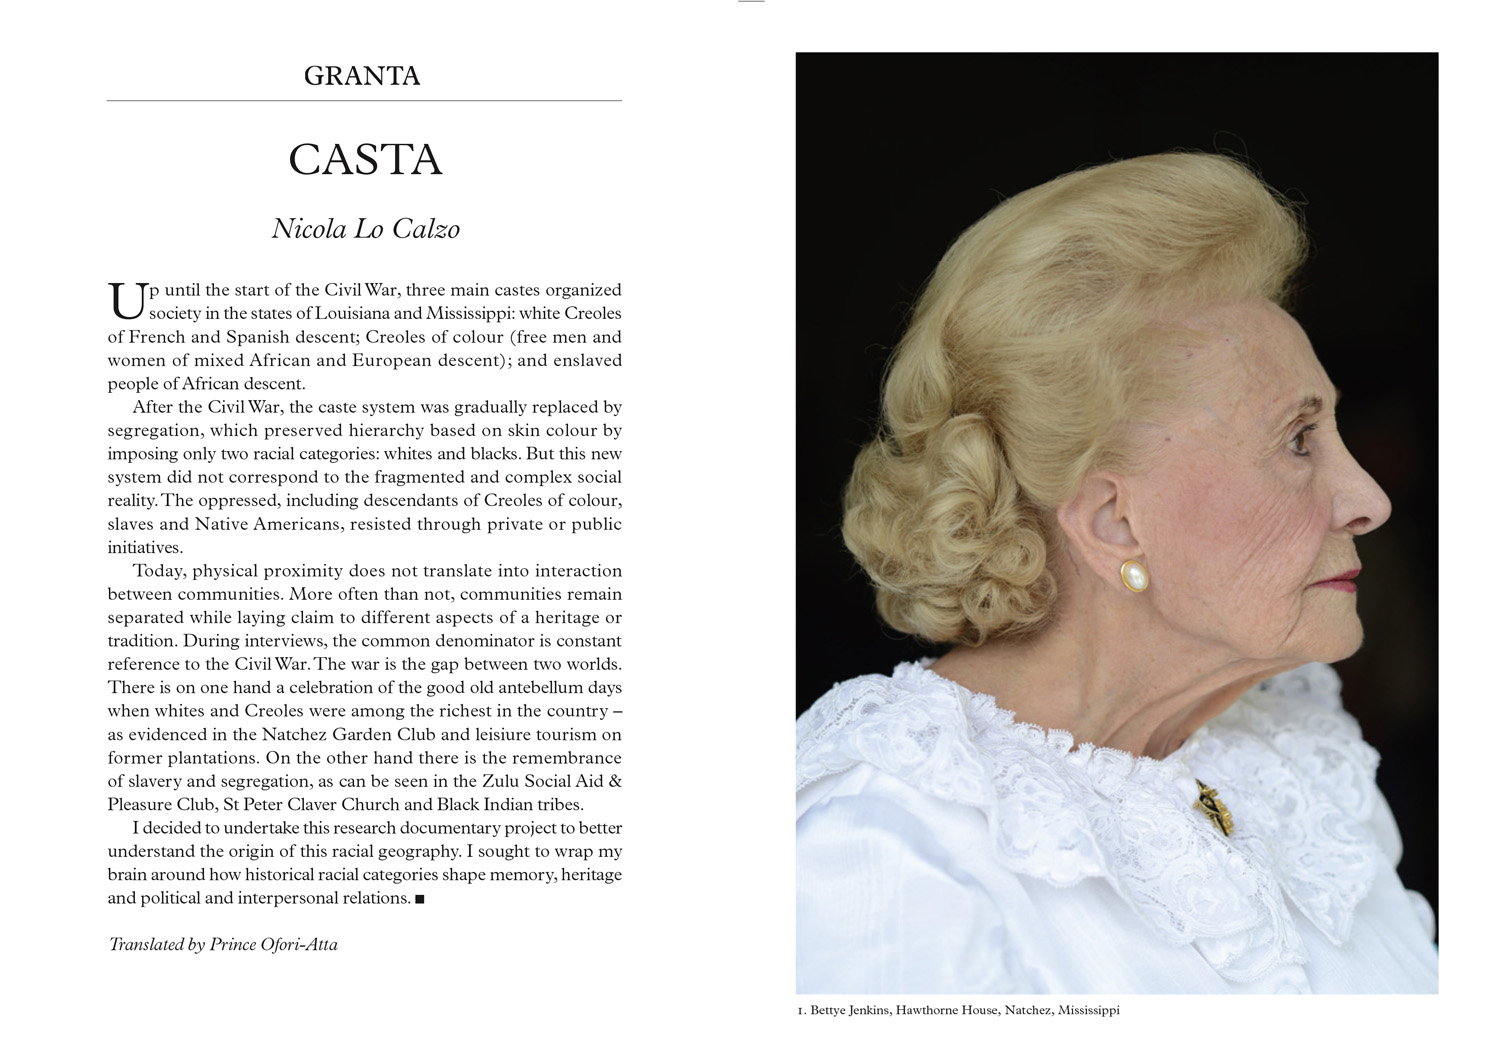 Casta published in Granta Magazine